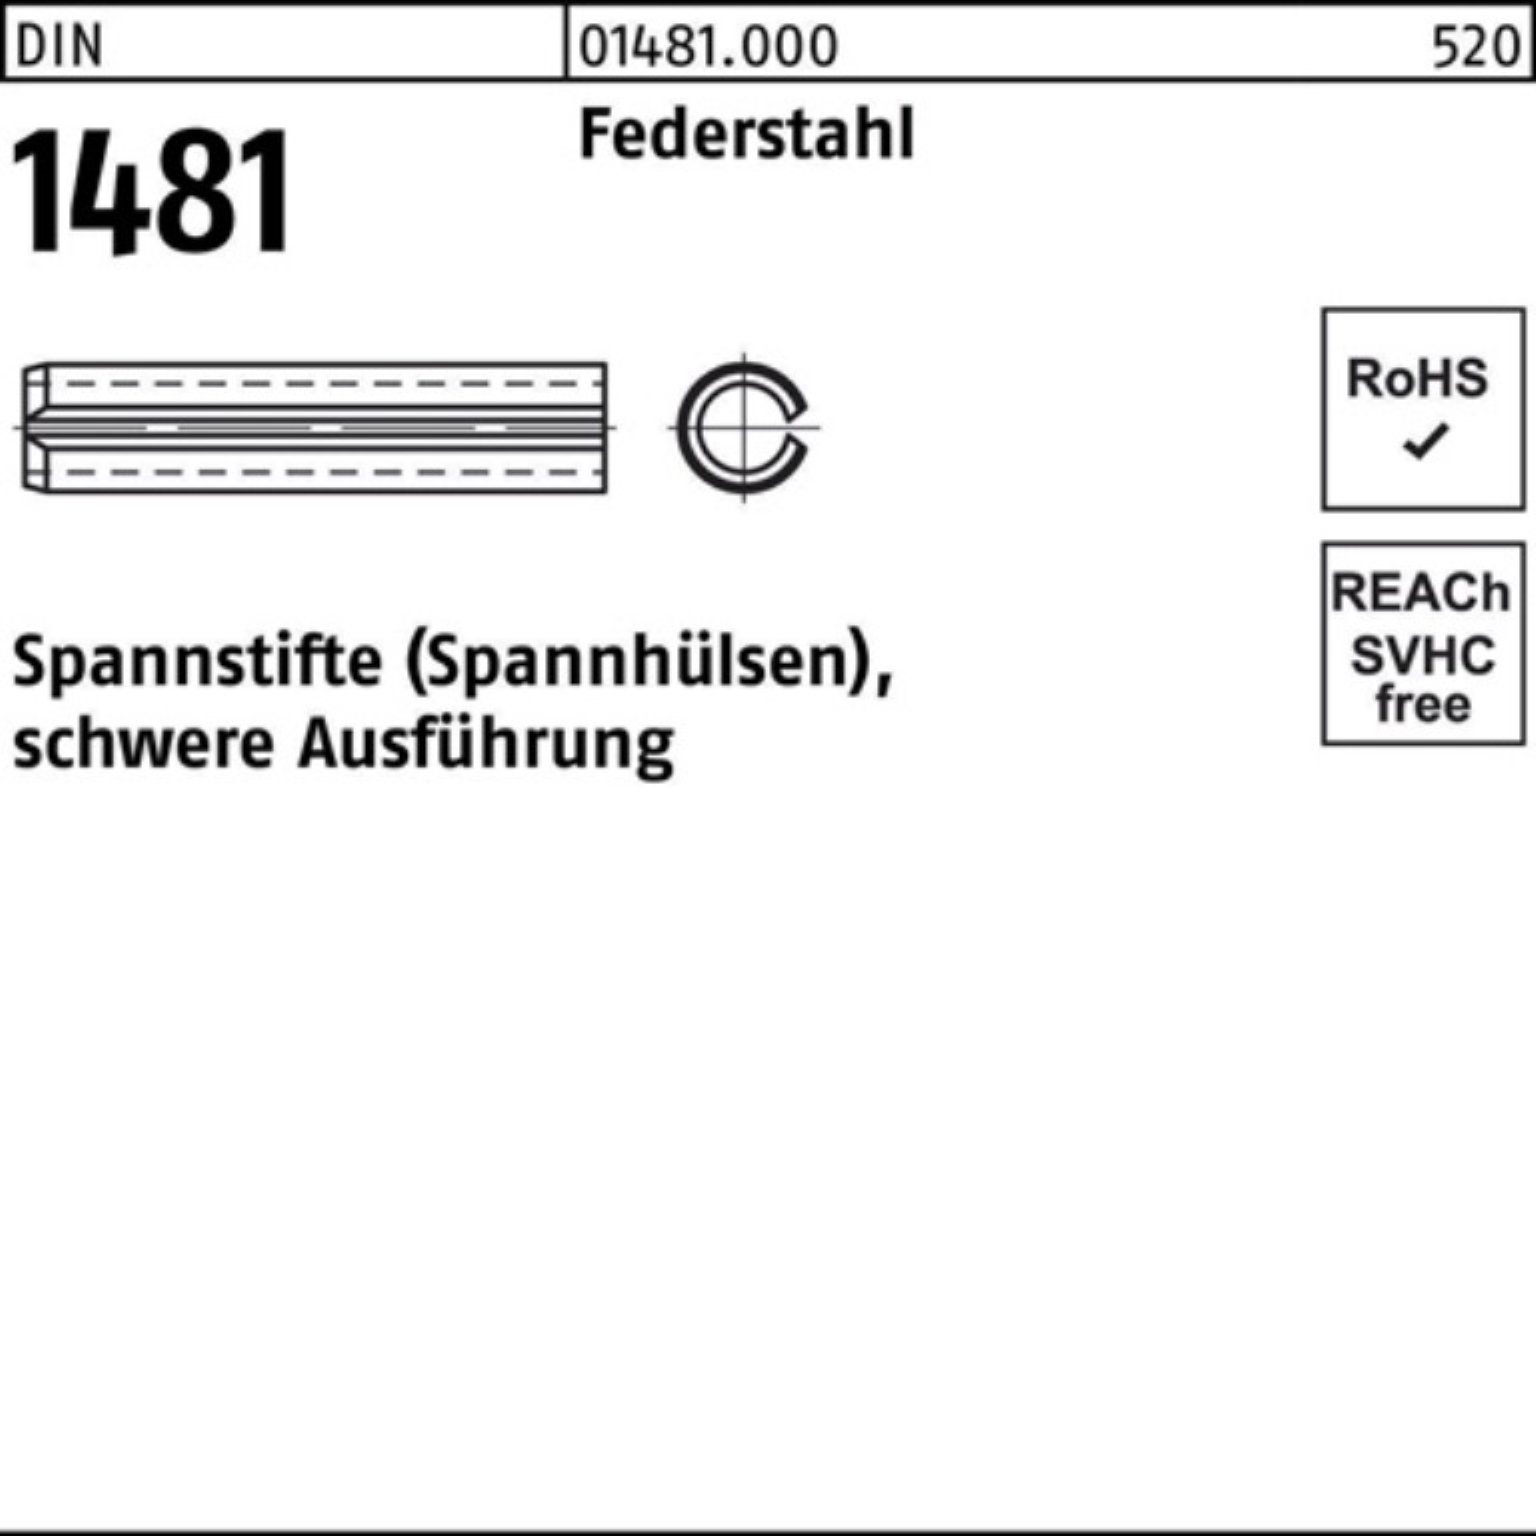 Reyher Spannstift 100er Pack Spannstift DIN 1481 28x 55 Federstahl schwere Ausführung 1